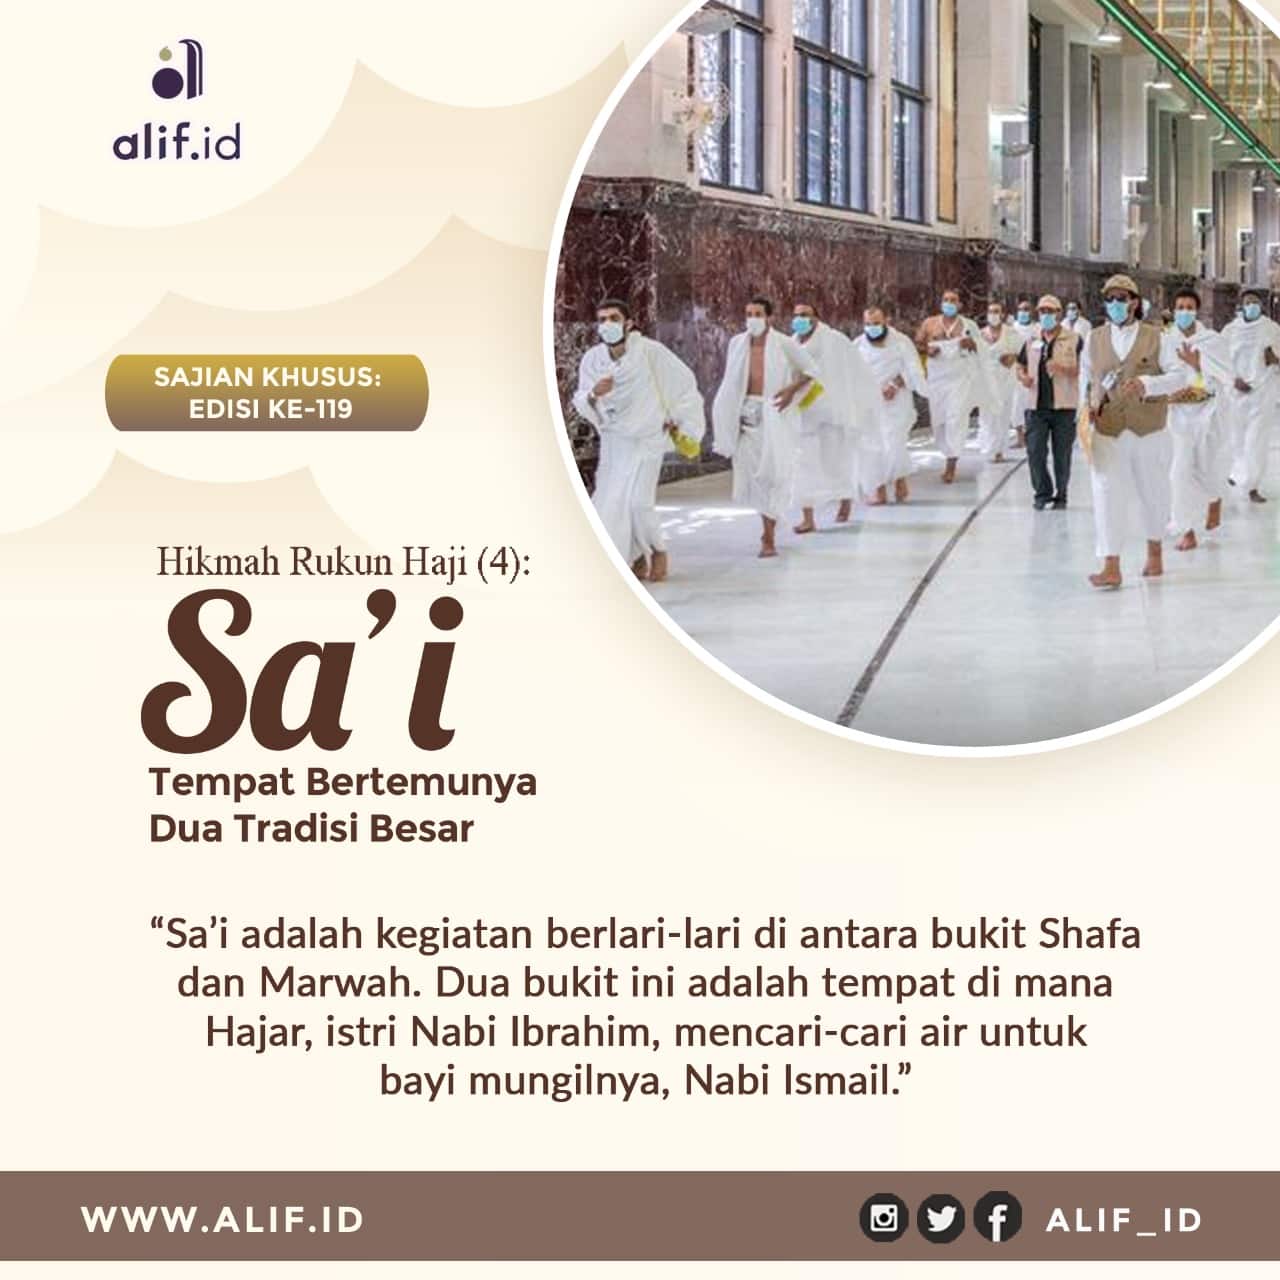 Hikmah Rukun Haji (4) Sa’i, Tempat Bertemunya Dua Tradisi Besar